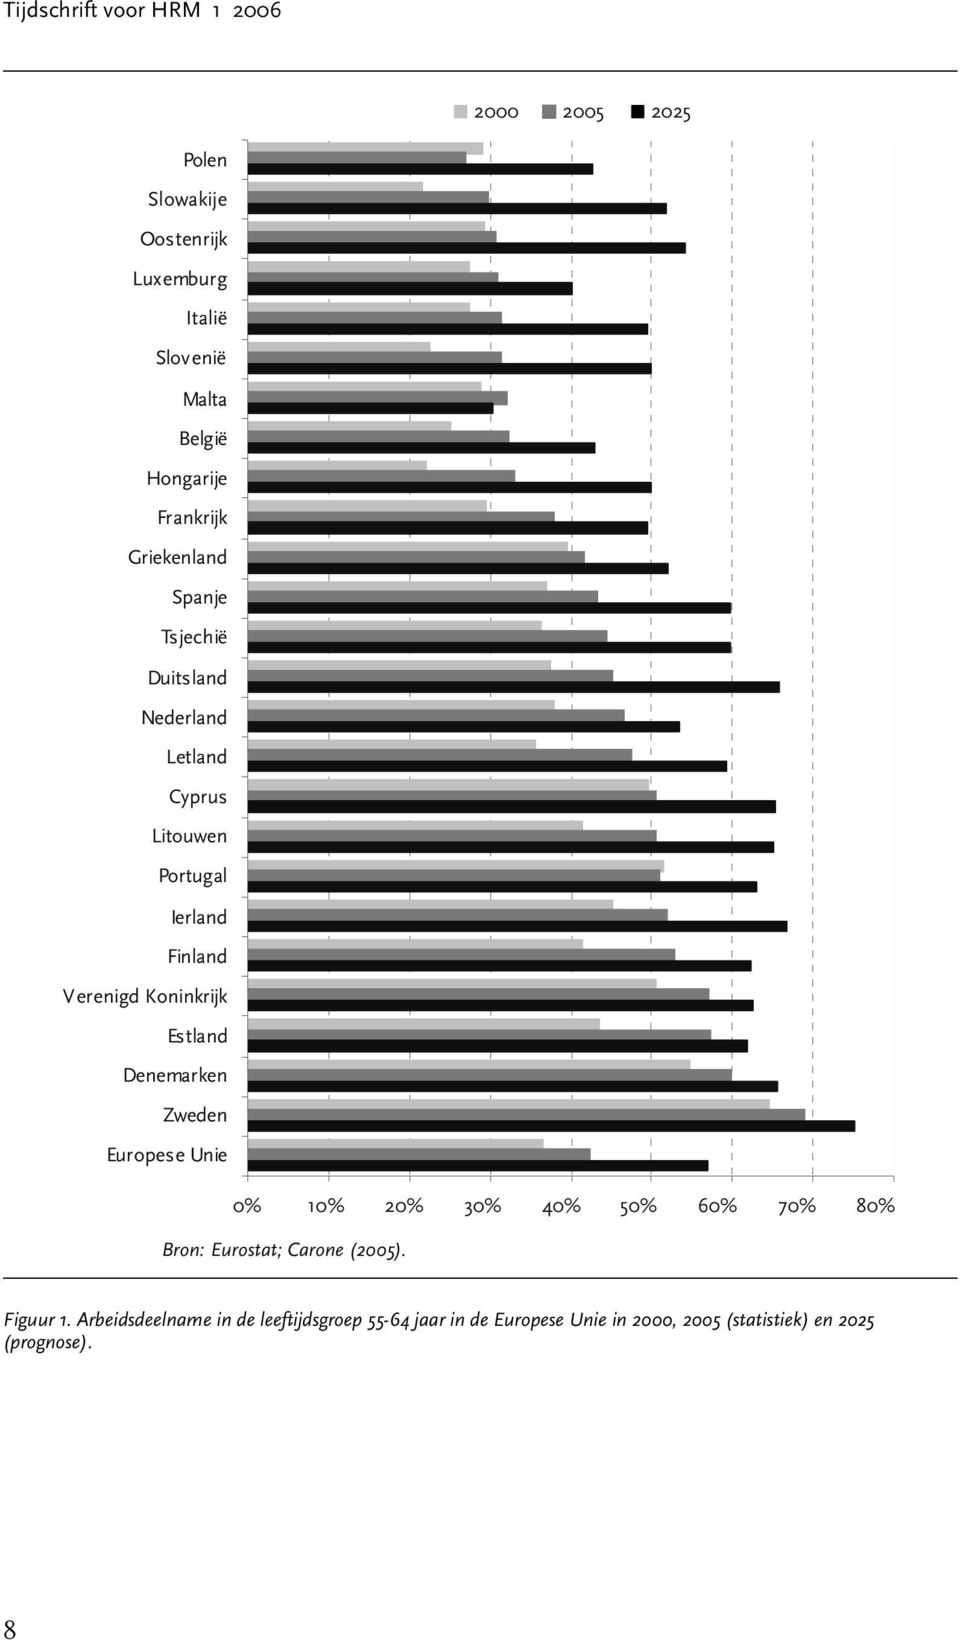 Koninkrijk Estland Denemarken Zweden Europese Unie 0% 10% 20% 30% 40% 50% 60% 70% 80% Bron: Eurostat; Carone (2005).